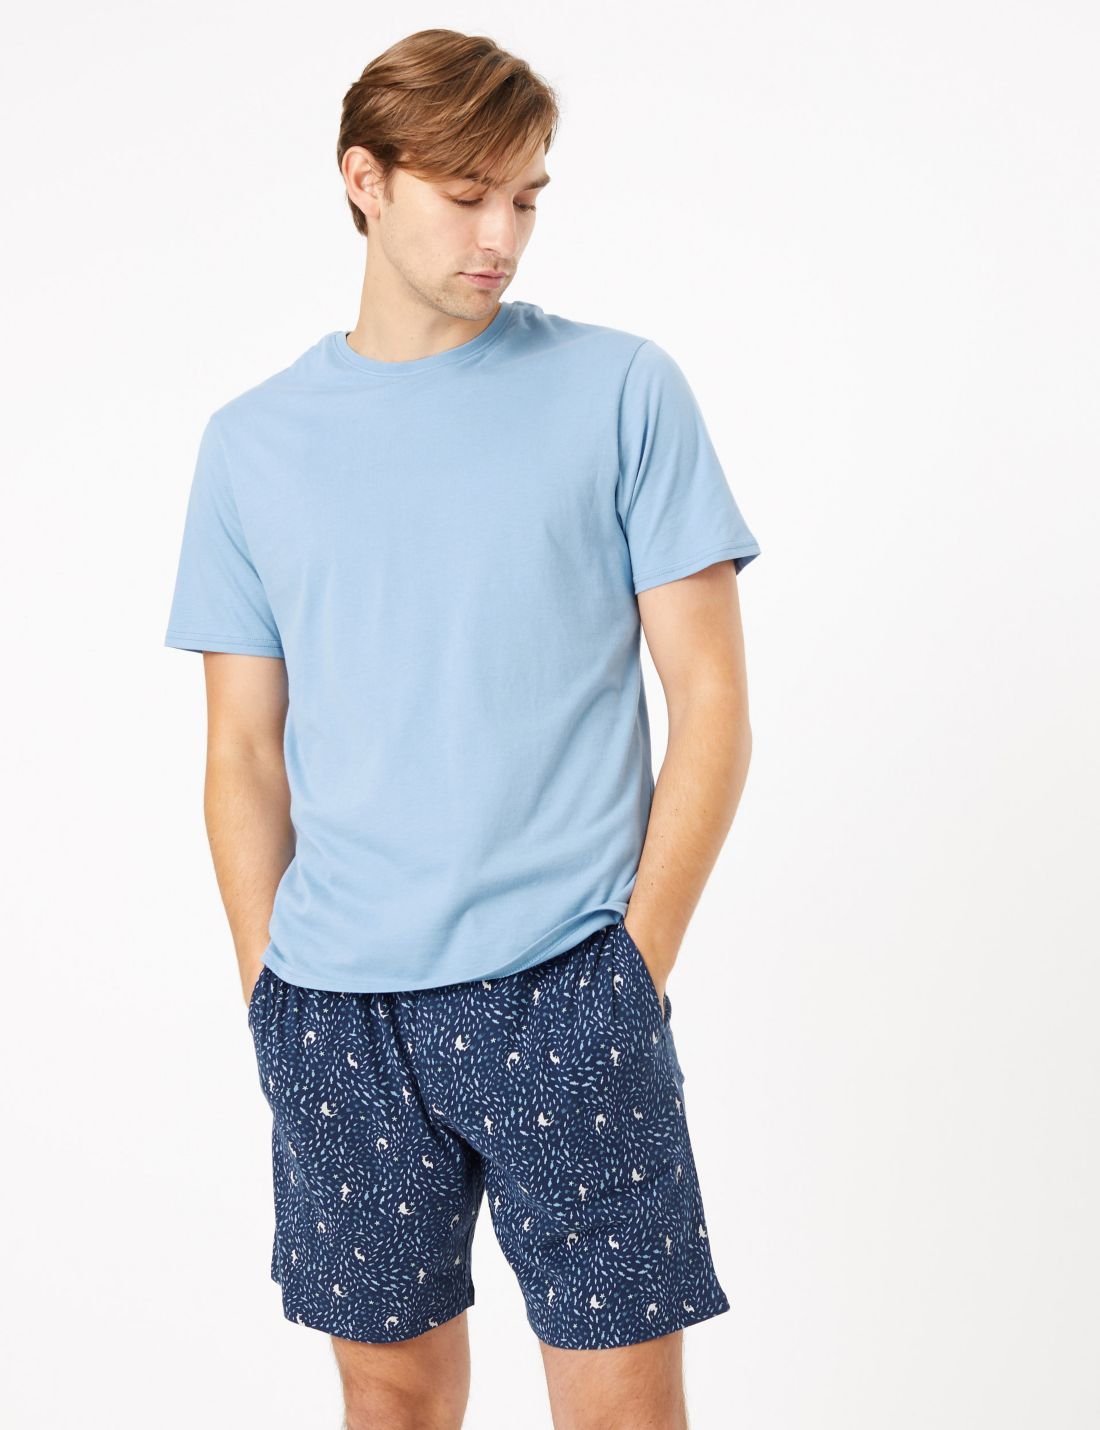 Saf Pamuklu Desenli Pijama Takımı